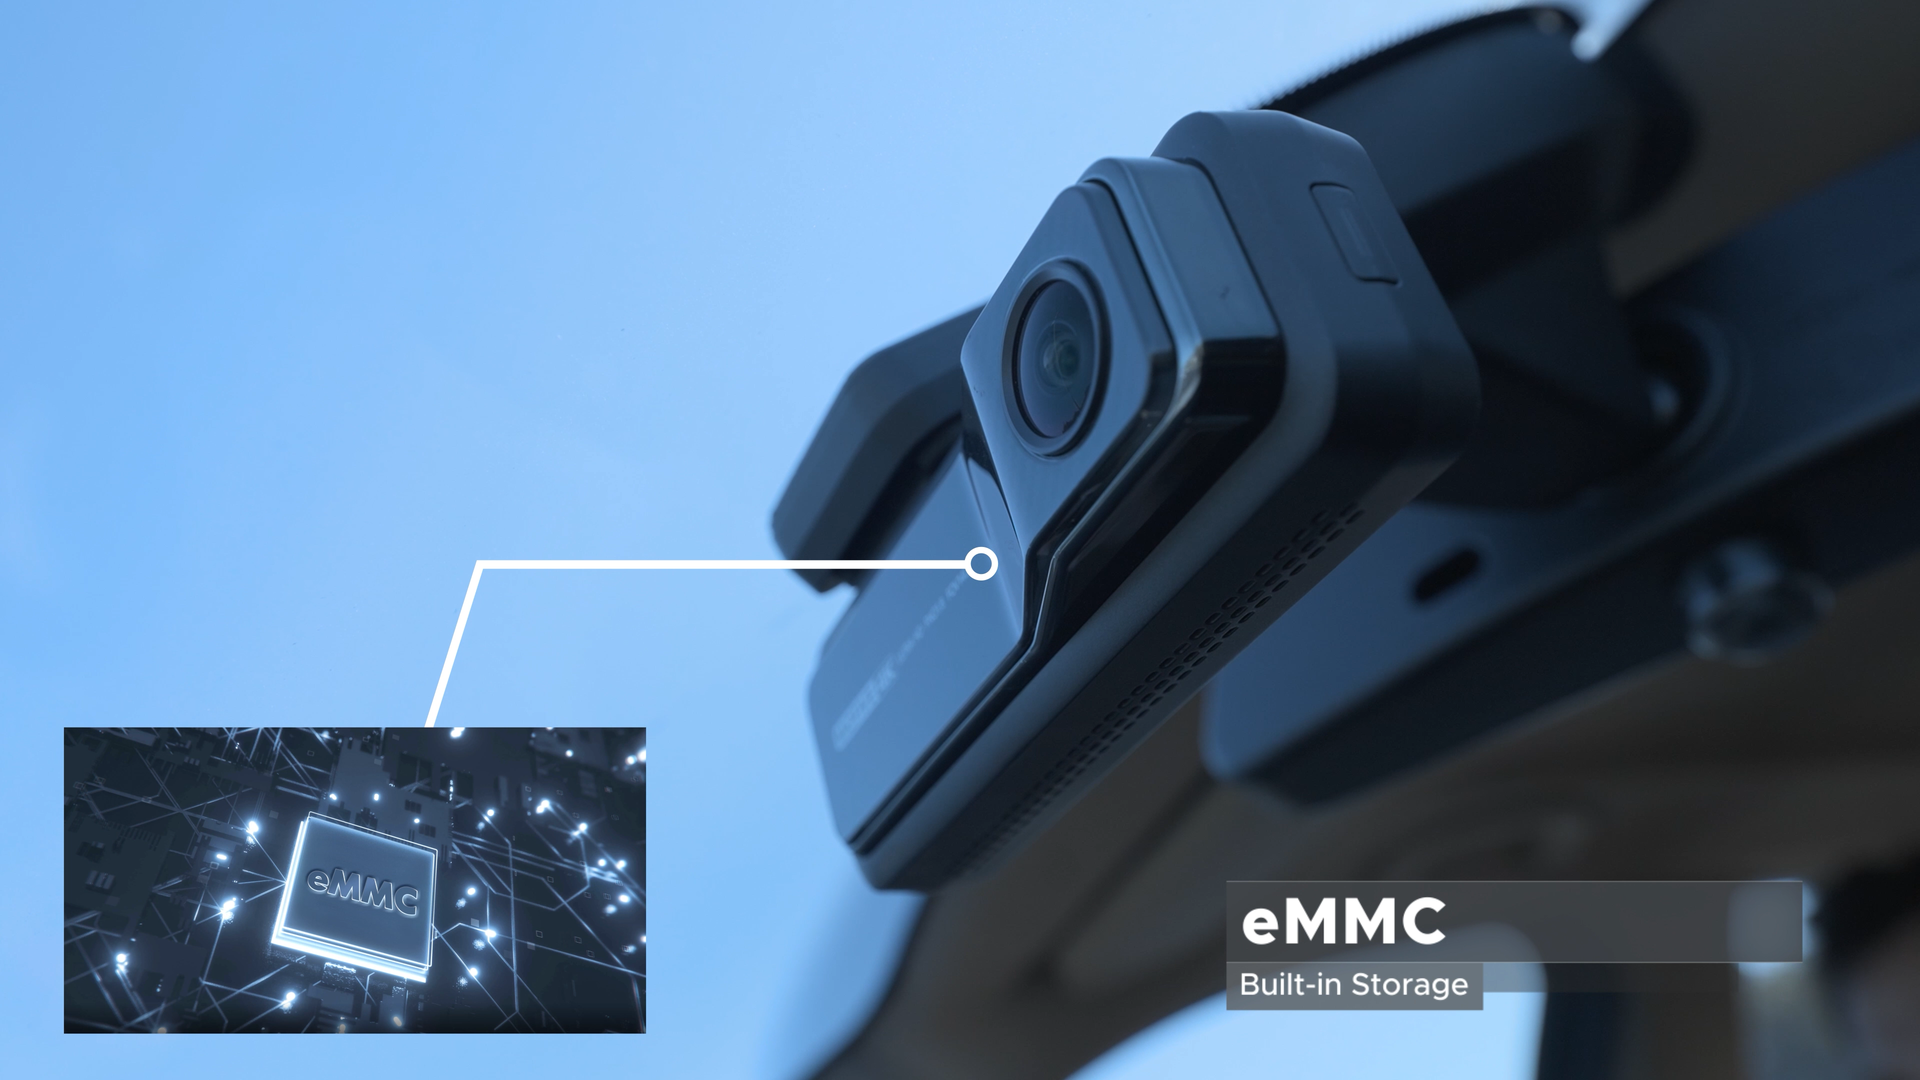 Miofive 4K Front Dash Camera, Built-in 64G eMMC Storage, Lithium Batte